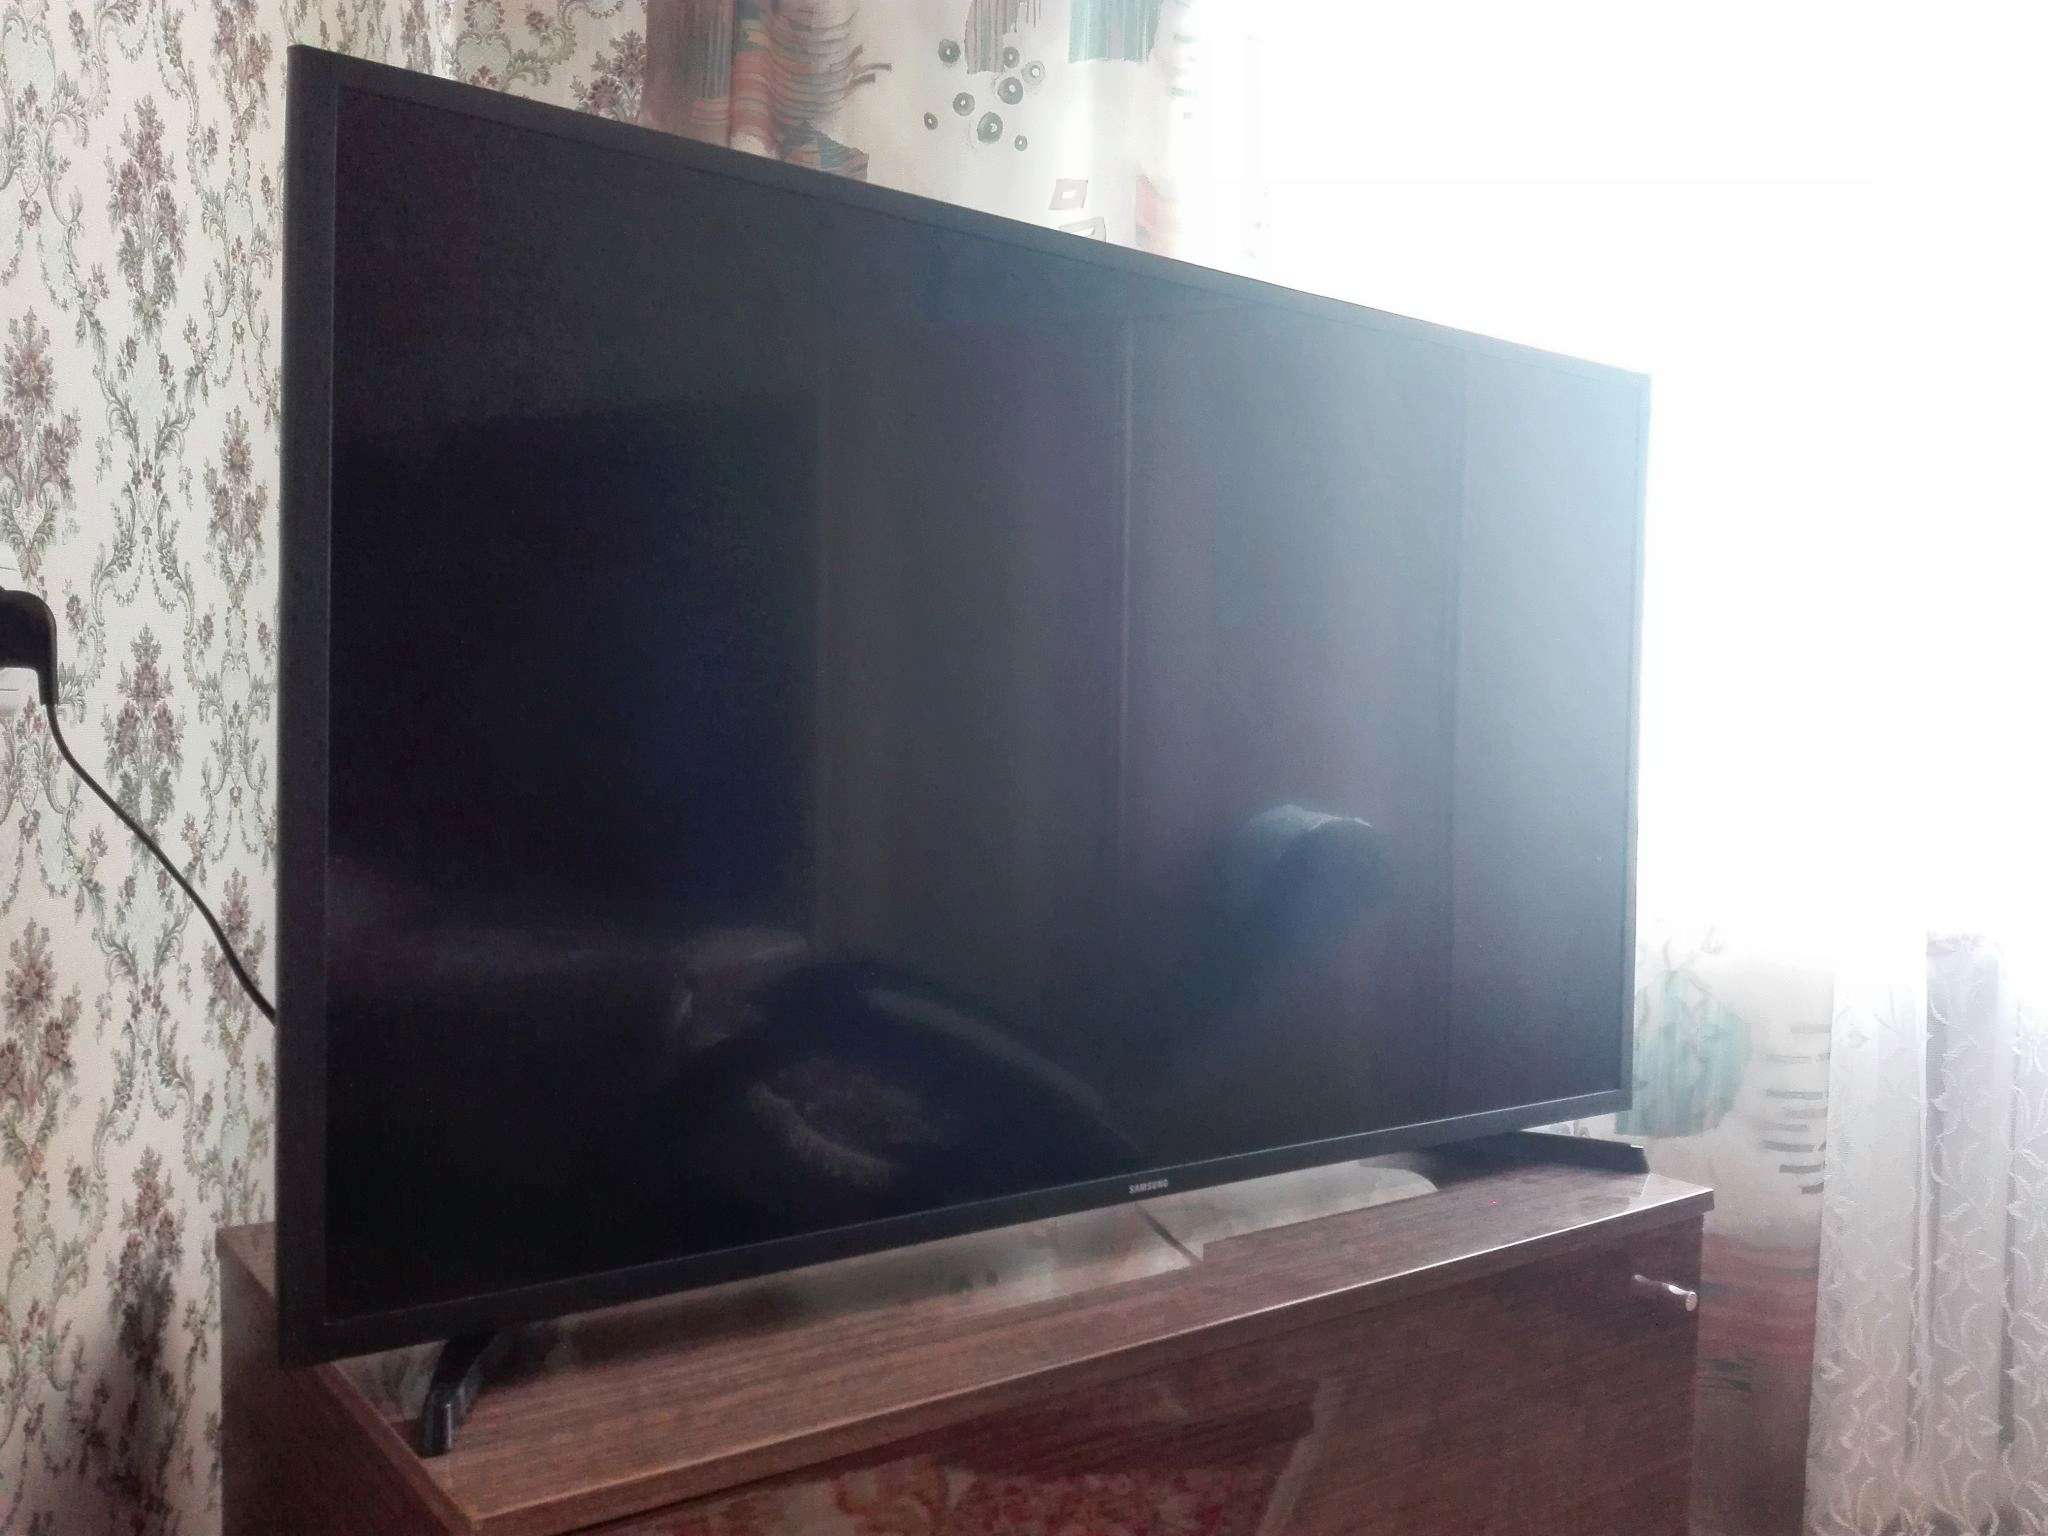 Samsung 32 Fhd Smart Tv T5300